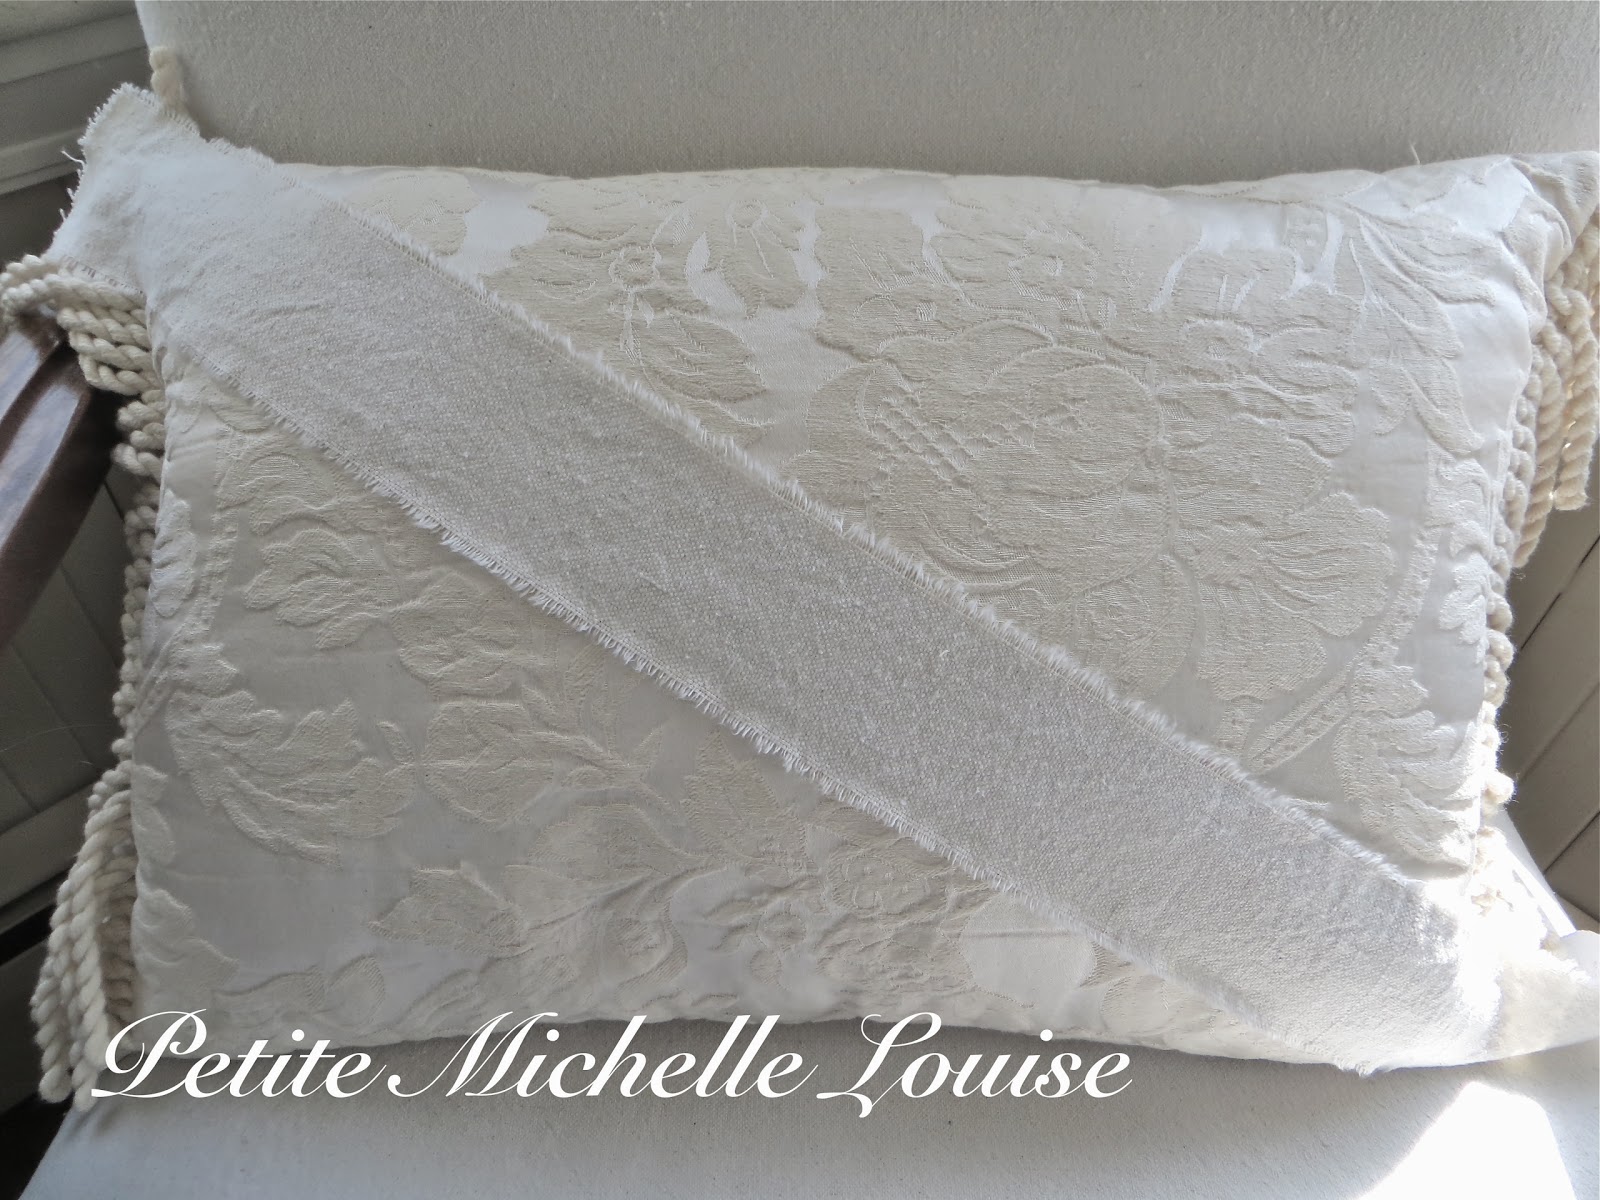 Petite Michelle Louise: DIY No Sew Union Jack Pillow....